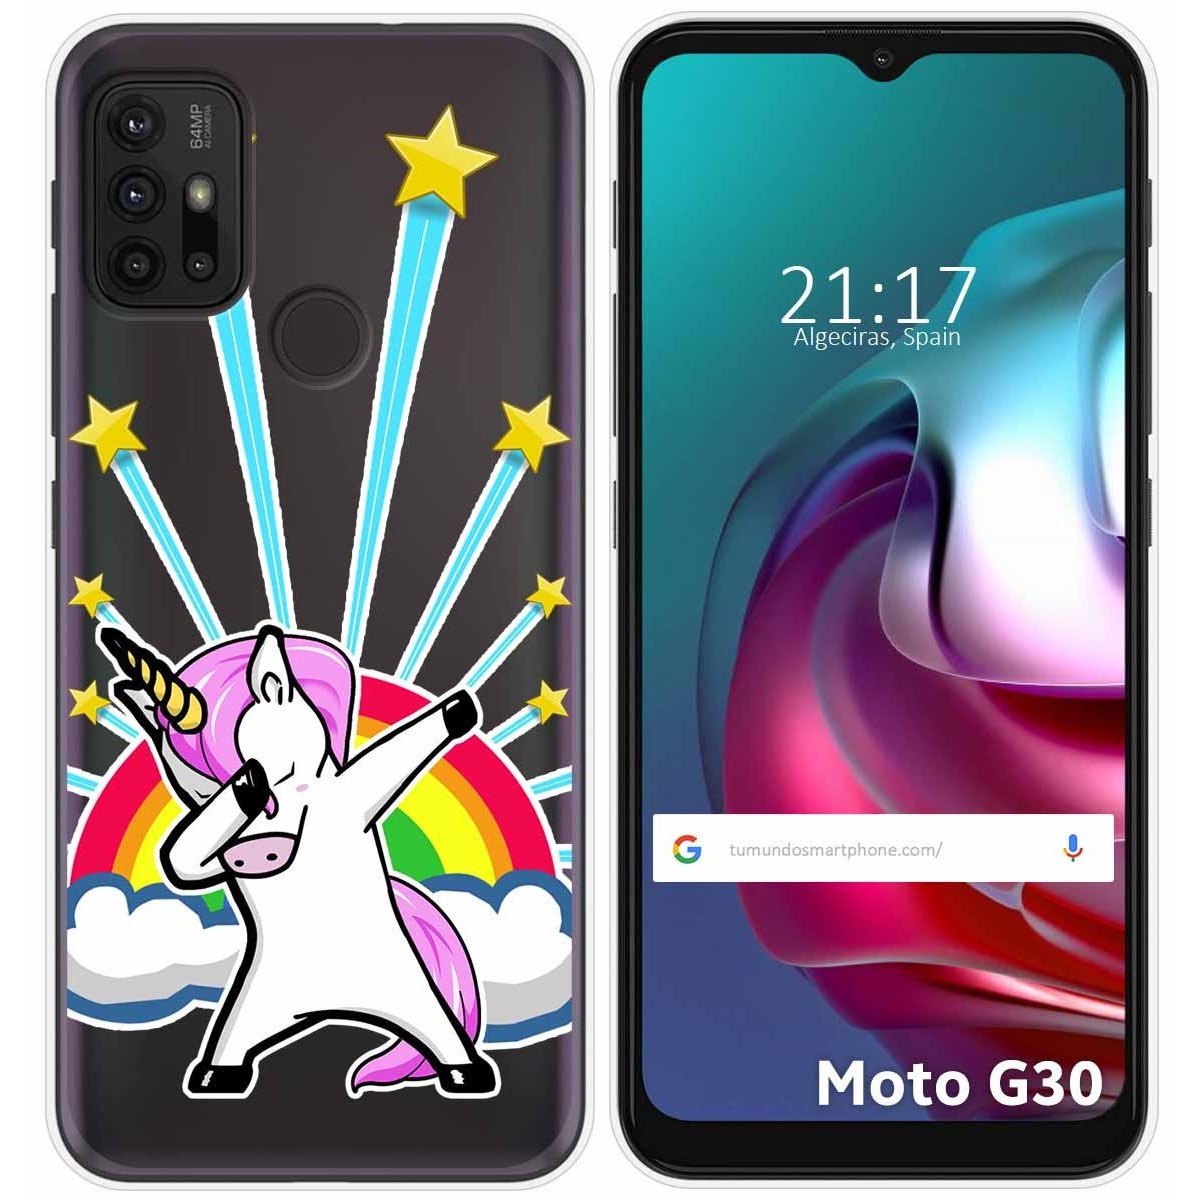 Funda Gel Transparente para Motorola Moto G10 / G20 / G30 diseño Unicornio Dibujos